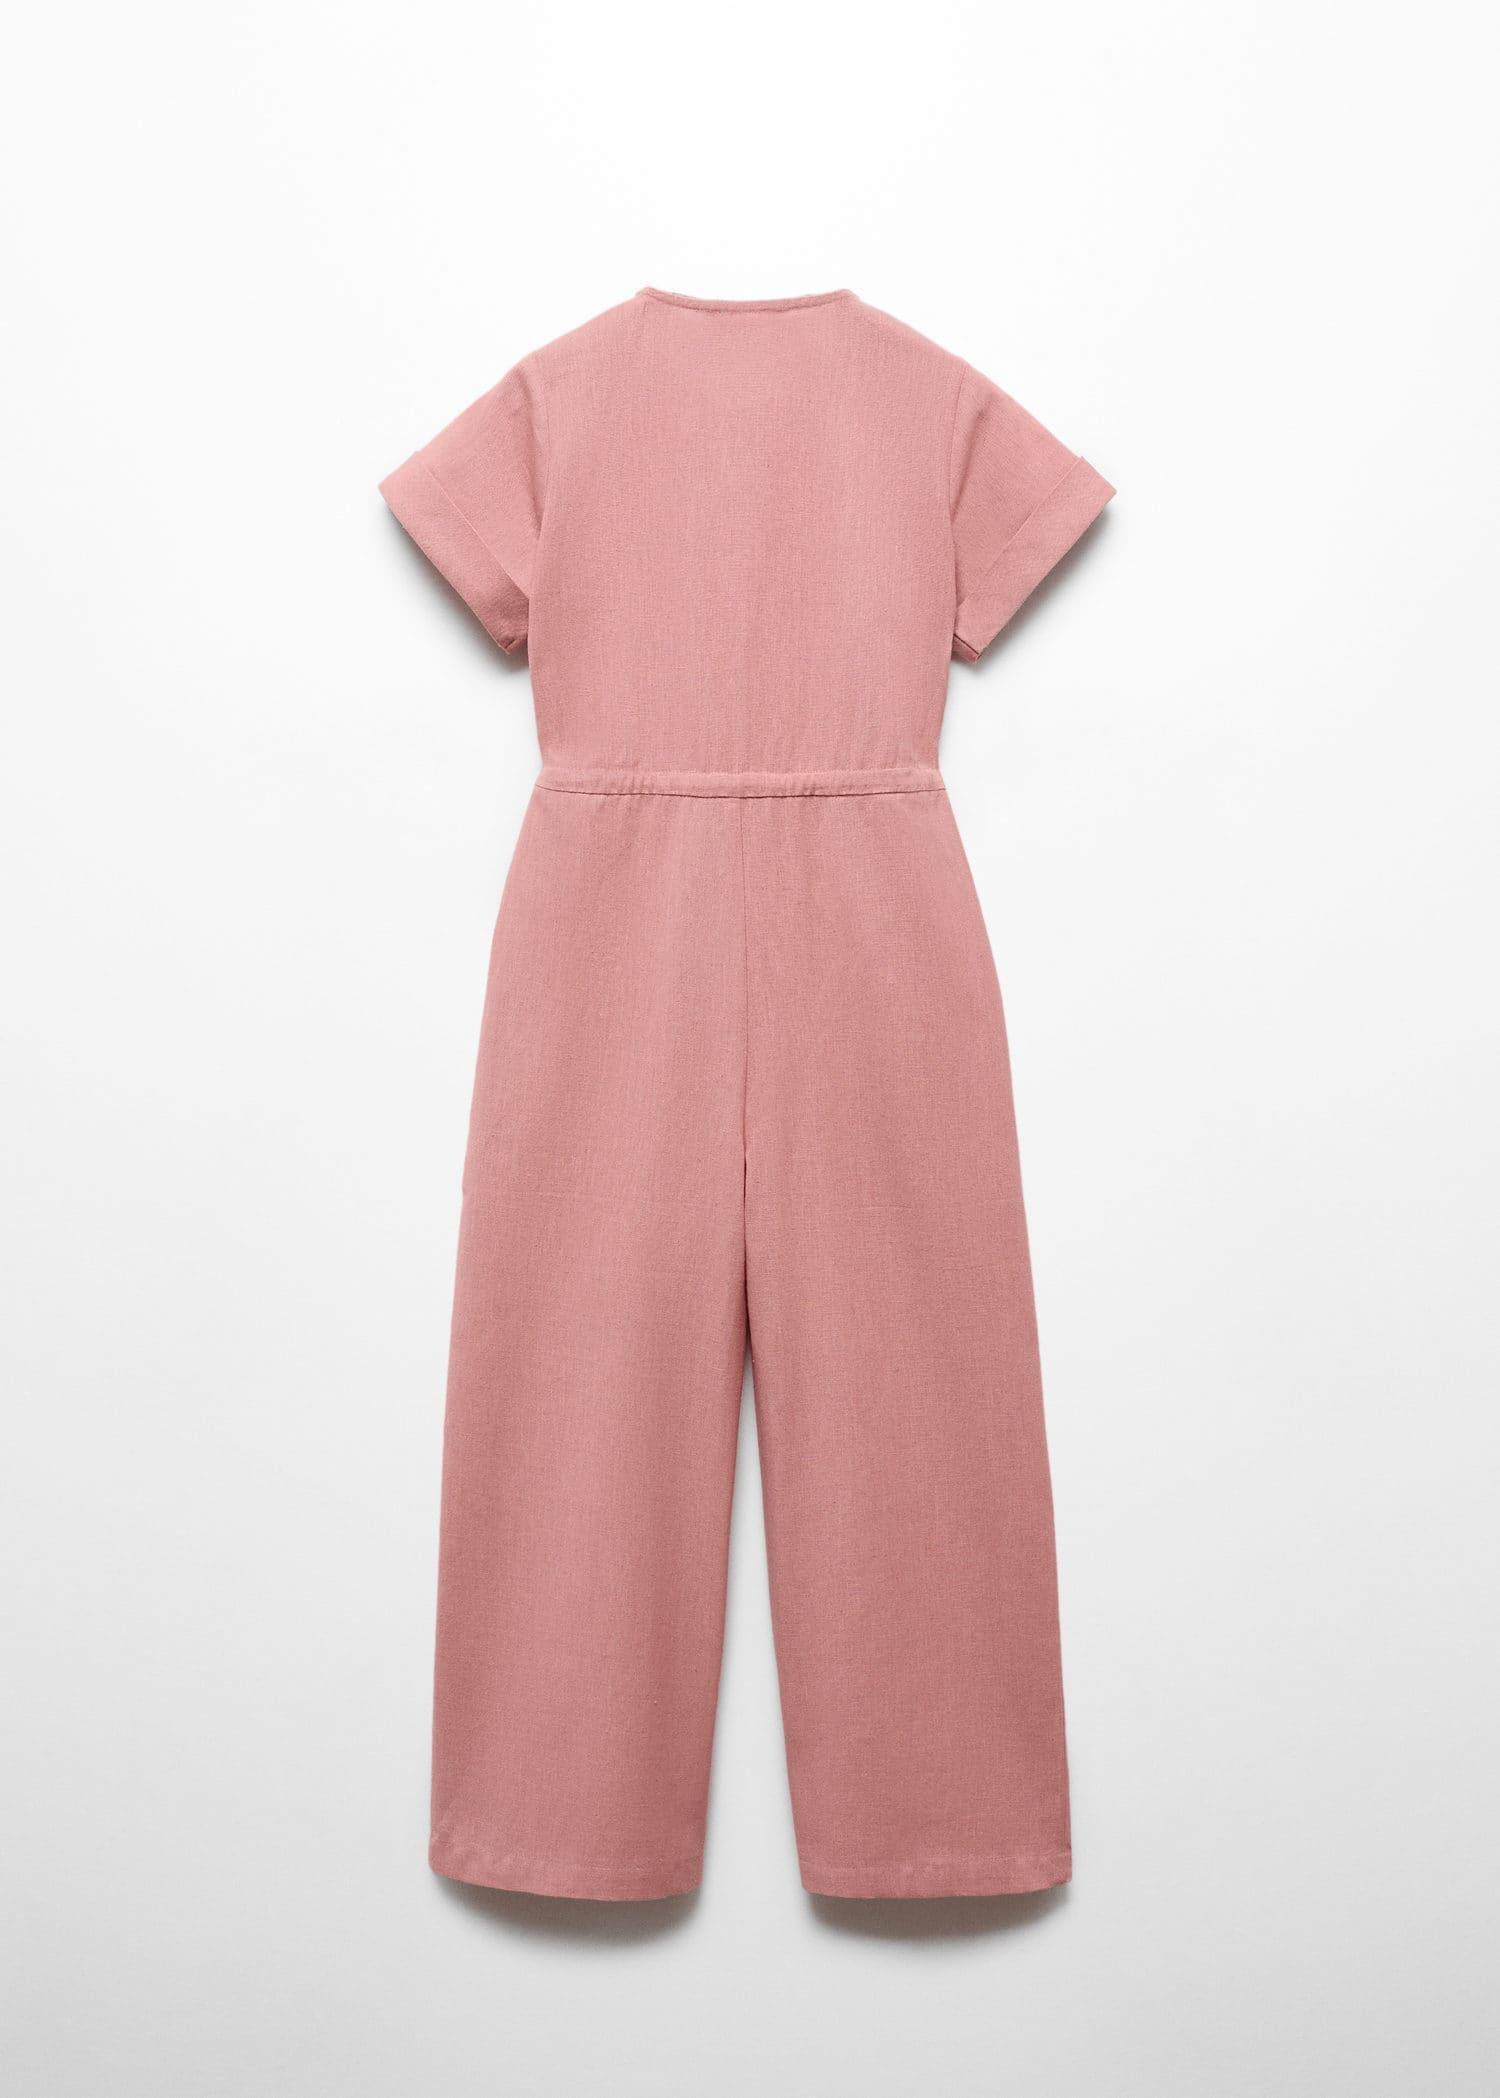 Mango - Pink Bow Linen Jumpsuit, Kids Girls